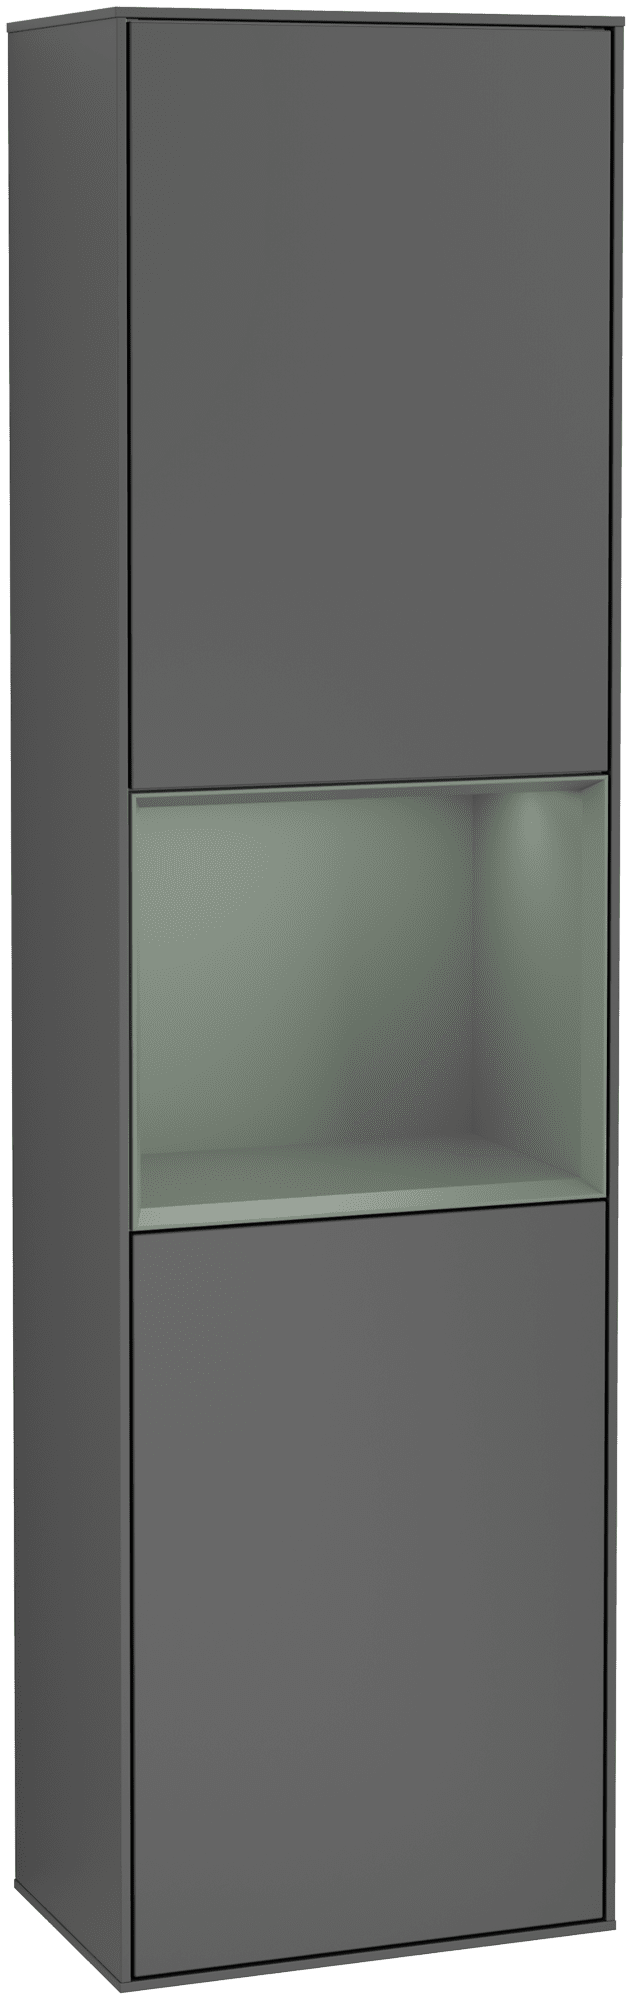 Bild von VILLEROY BOCH Finion Hochschrank, mit Beleuchtung, 2 Türen, 418 x 1516 x 270 mm, Anthracite Matt Lacquer / Olive Matt Lacquer #G470GMGK